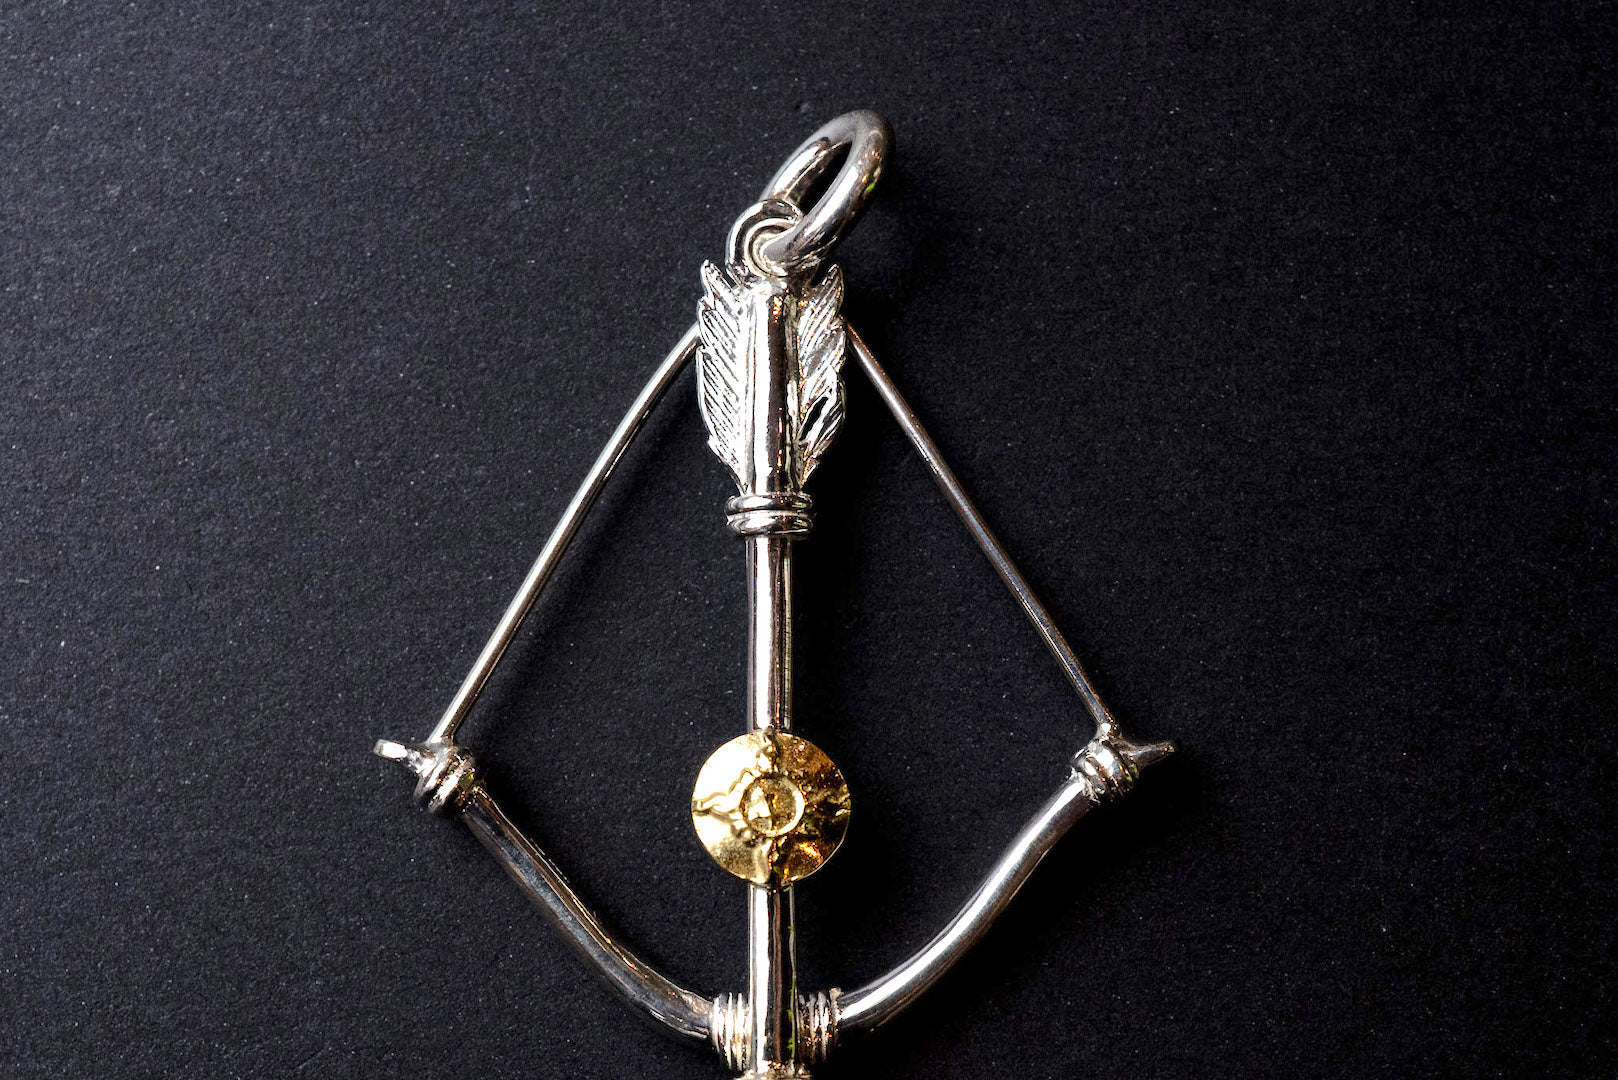 First Arrow's Size Medium "Bow & Arrow" Pendant K18 Gold Emblem (P-217)